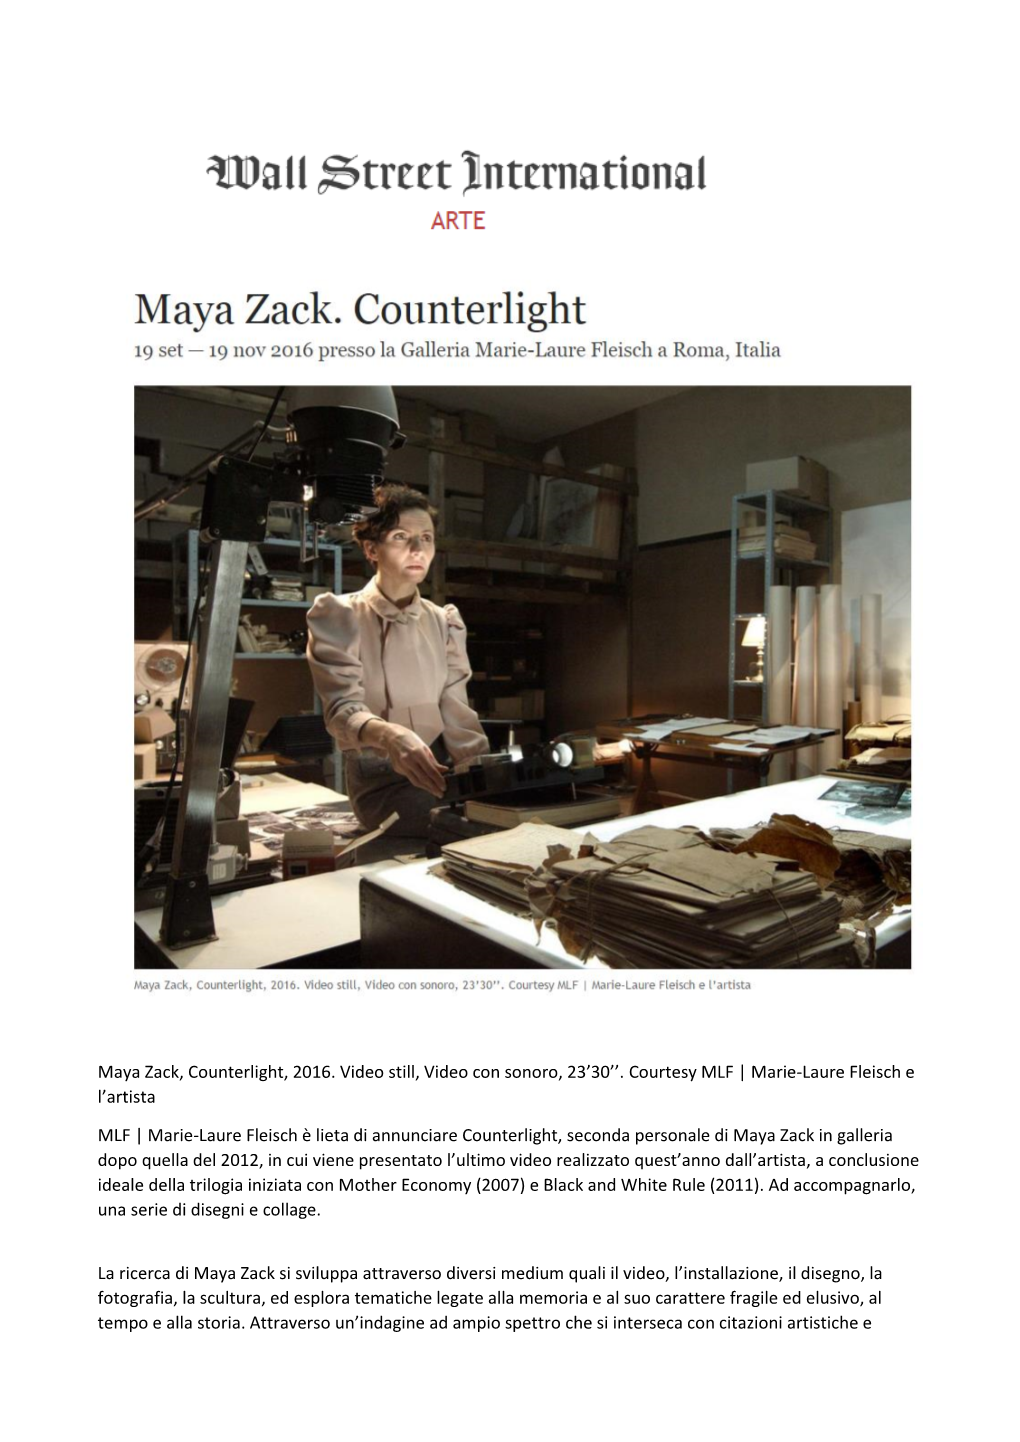 Maya Zack, Counterlight, 2016. Video Still, Video Con Sonoro, 23'30